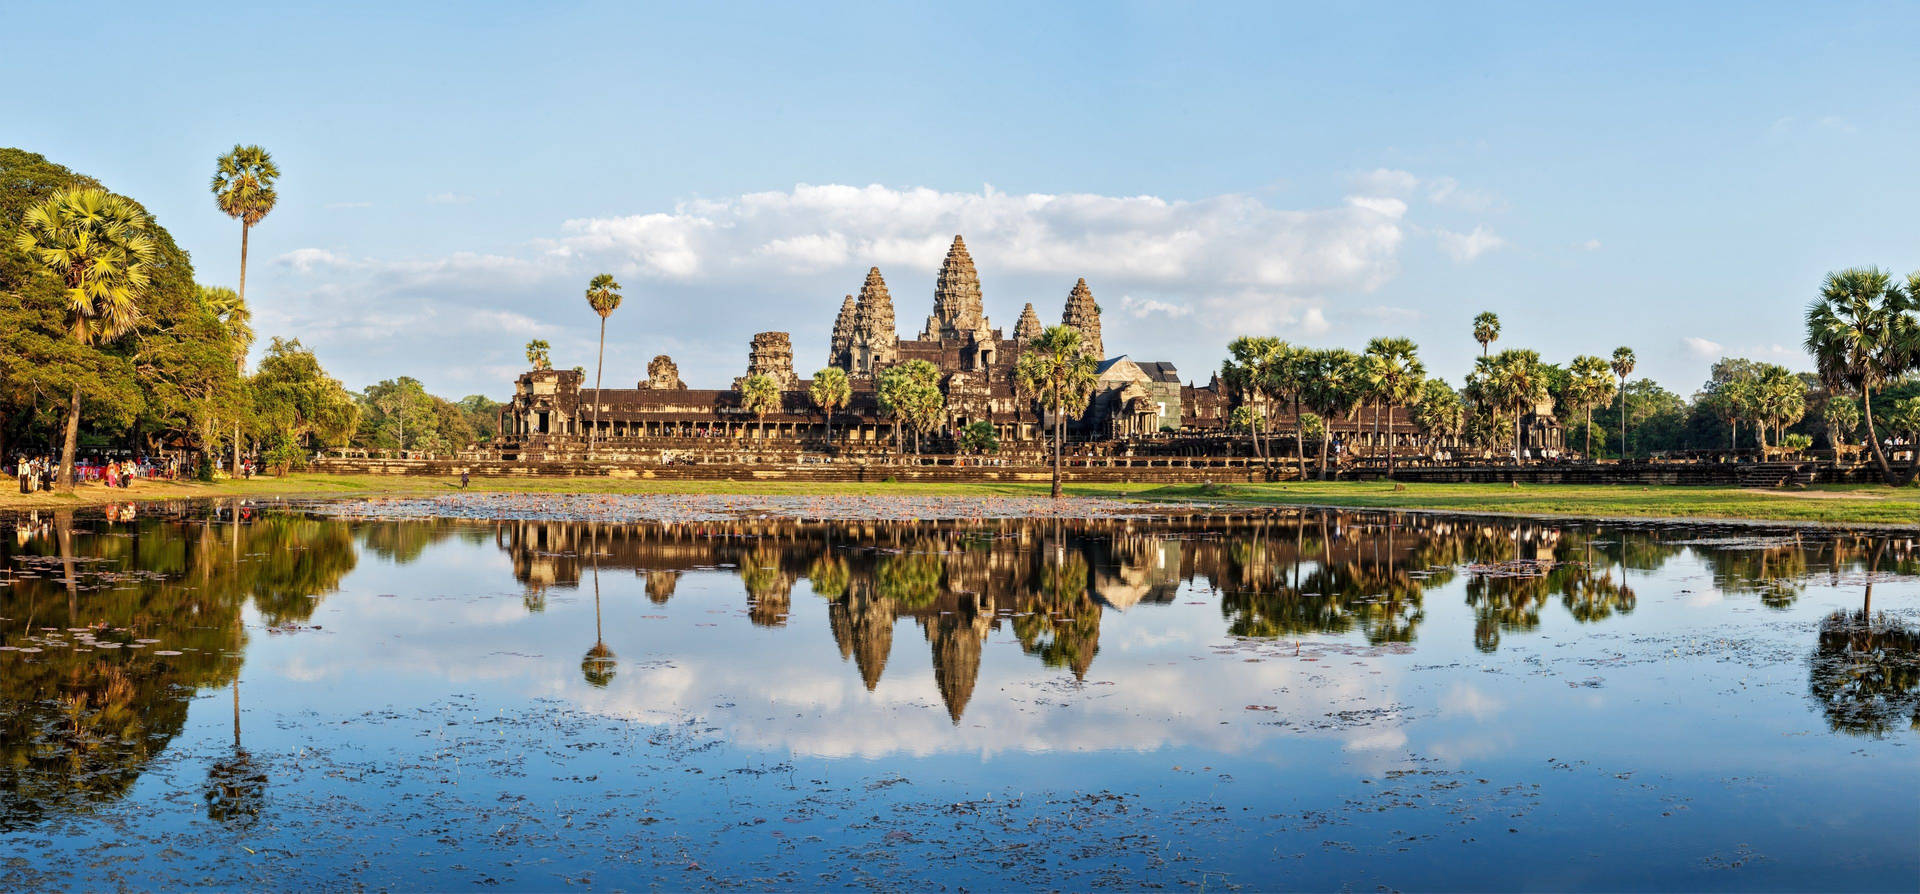 Angkorwat Under En Blå Himmel Speglas I Vattnet. Wallpaper